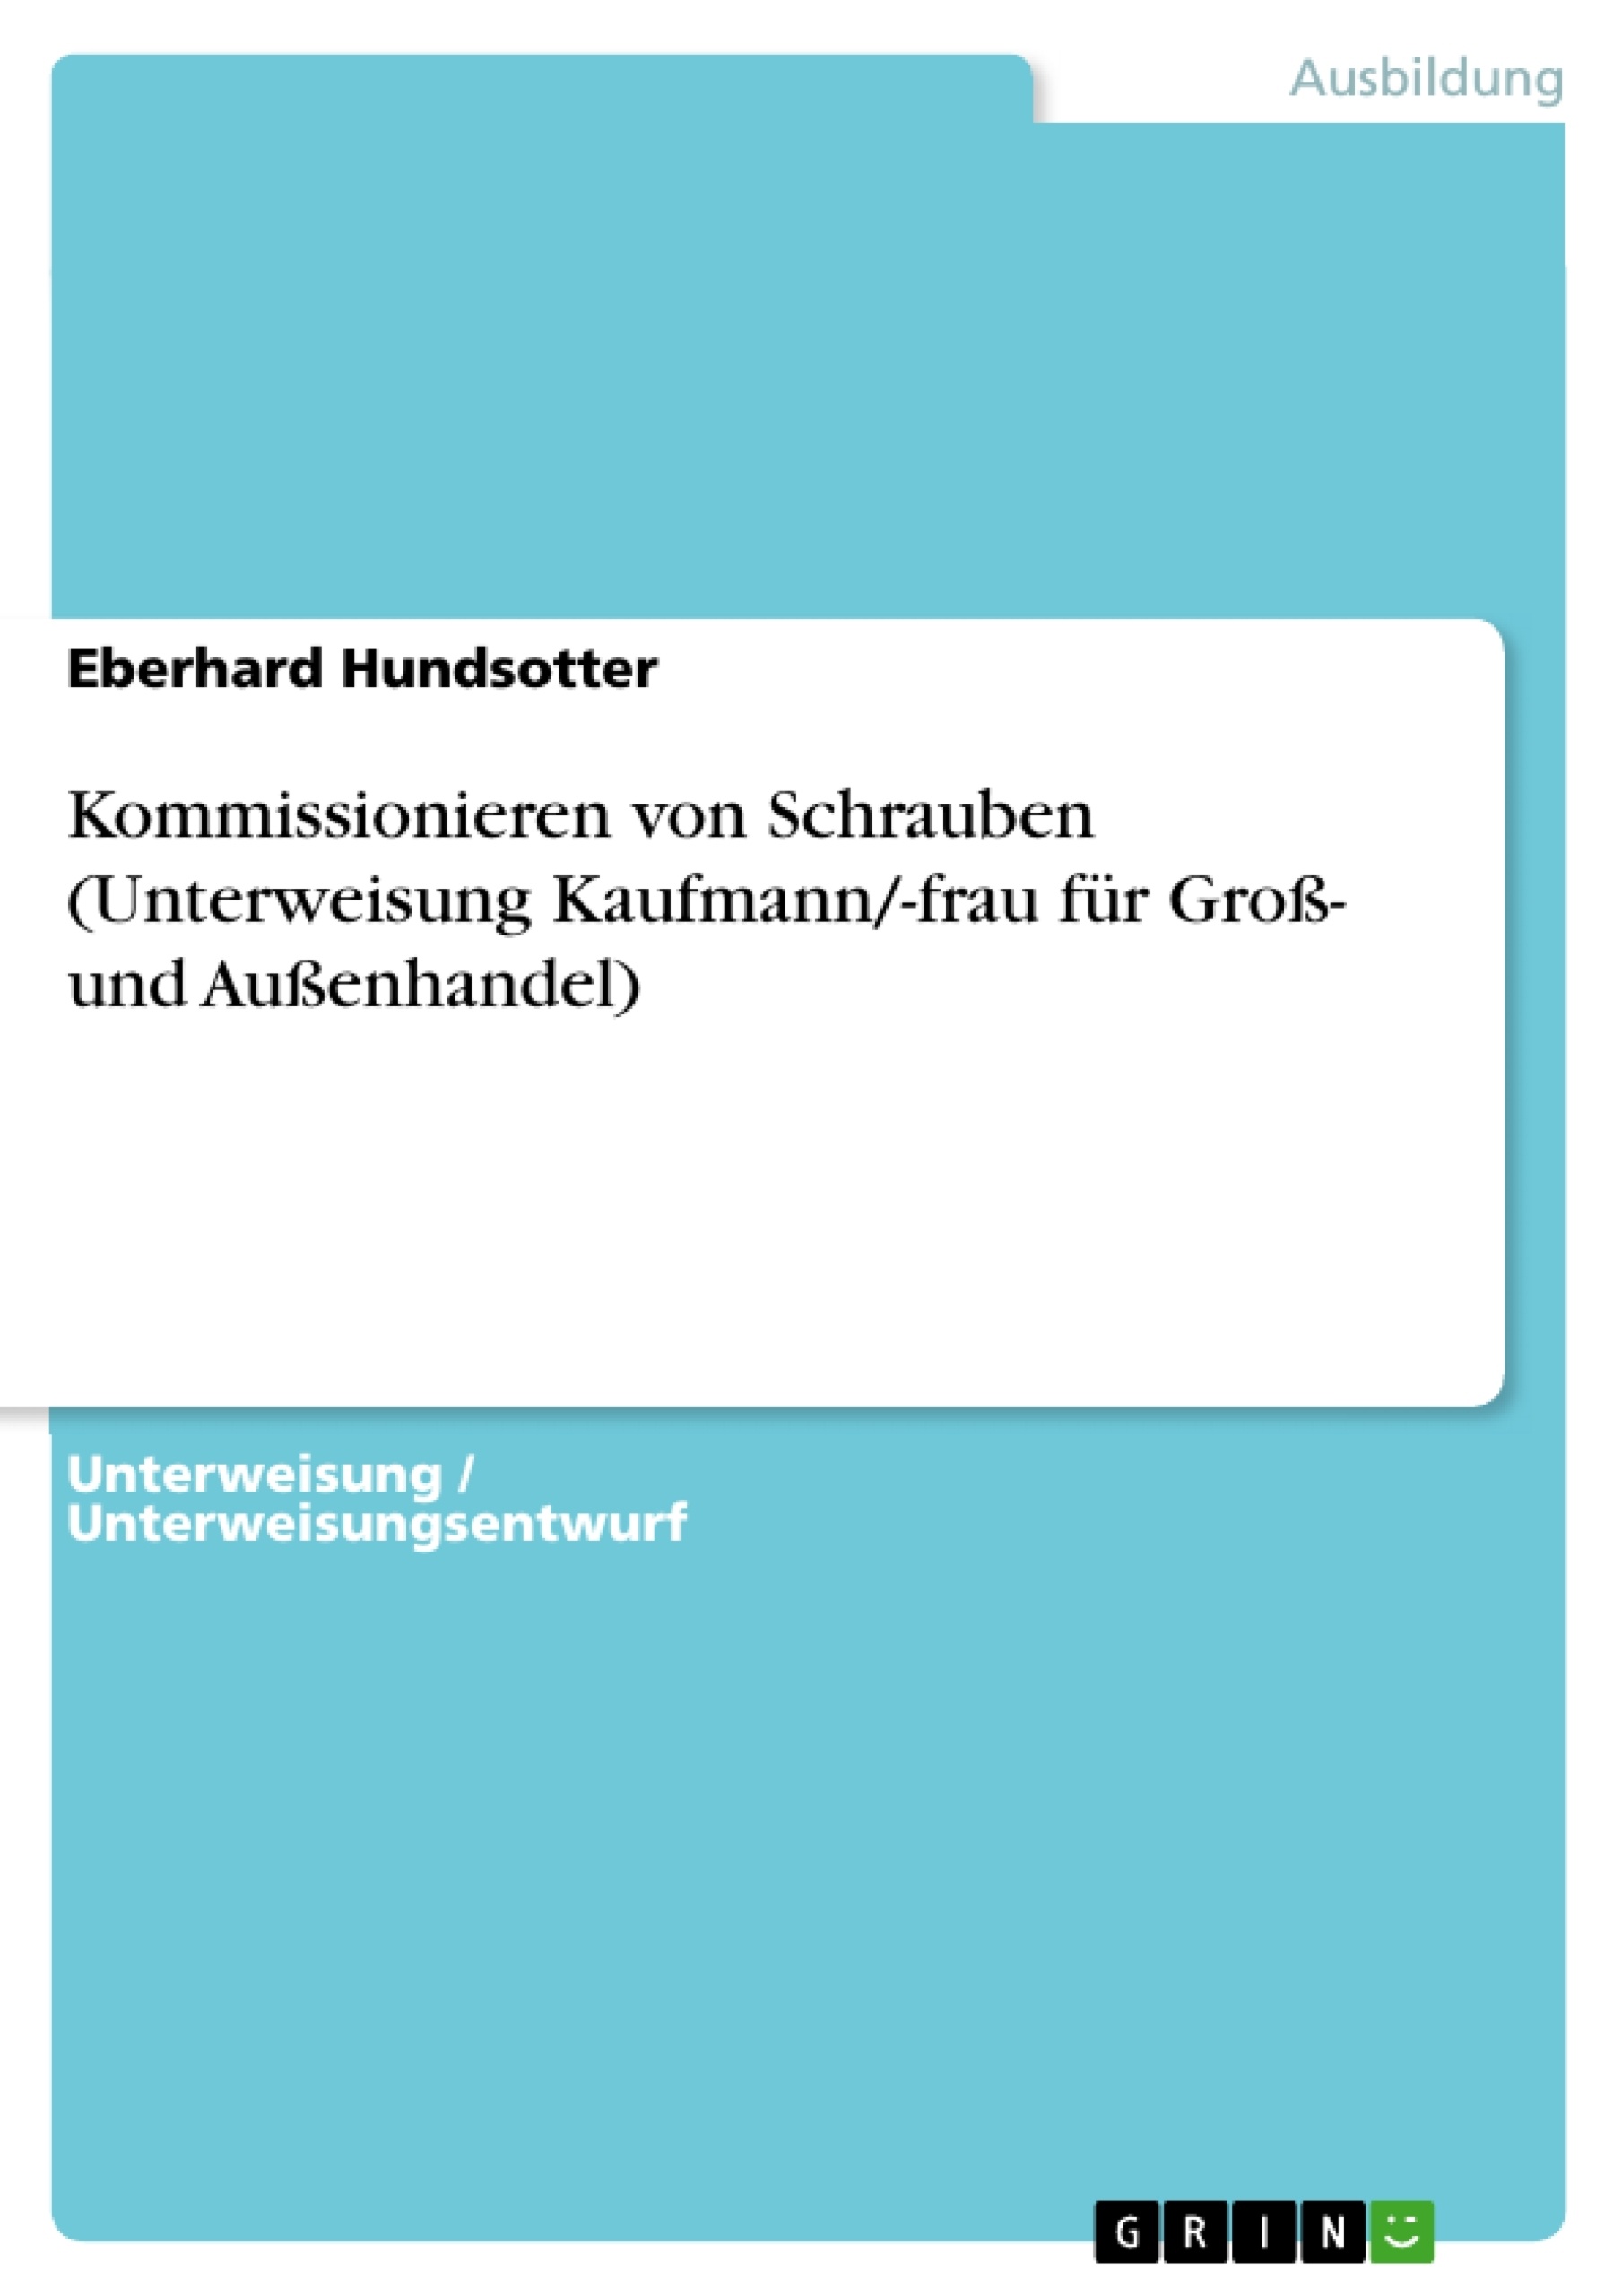 Titre: Kommissionieren von Schrauben (Unterweisung Kaufmann/-frau für Groß- und Außenhandel)